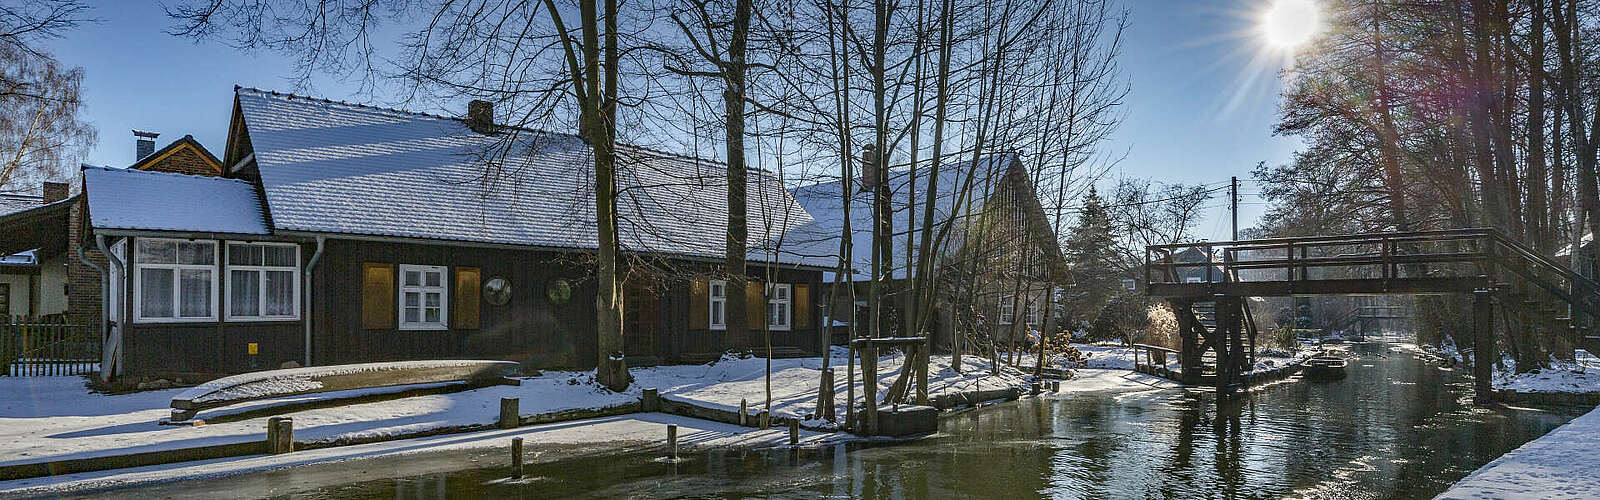 Winterliches Lehde im Spreewald,
        
    

        Foto: TMB-Fotoarchiv/Steffen Lehmann